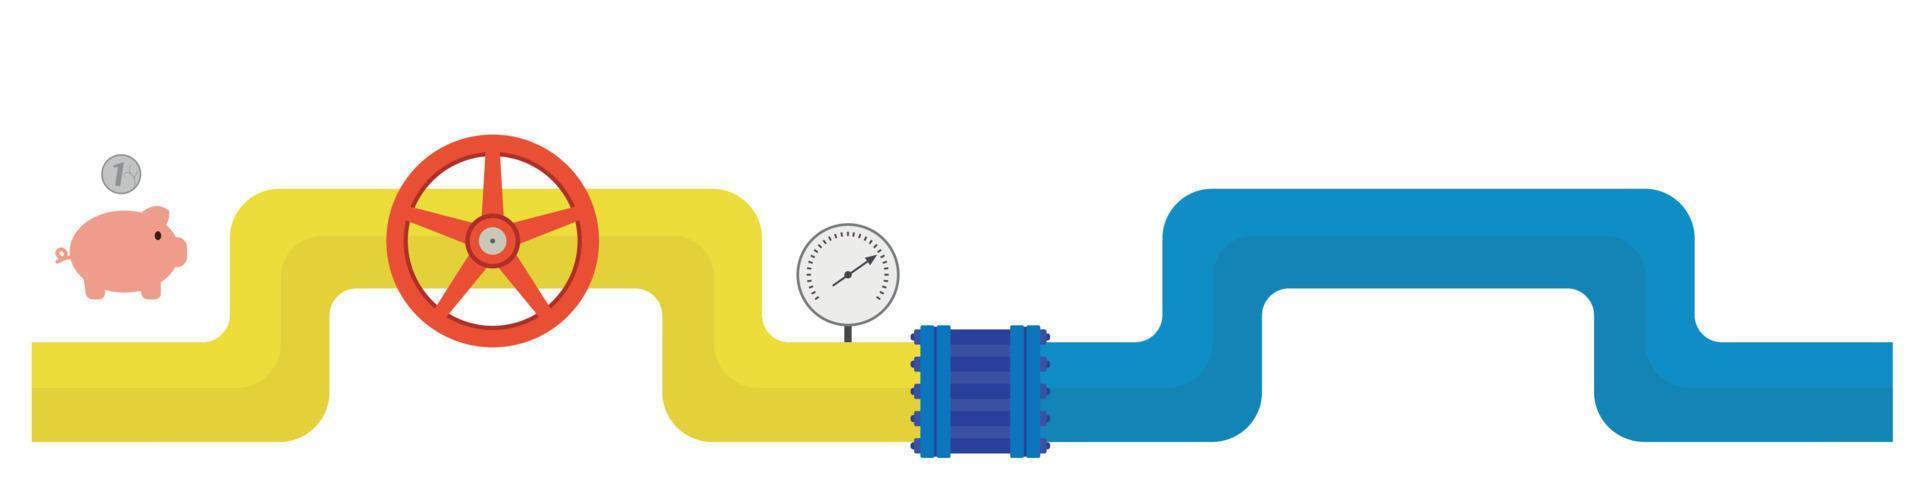 tubería de gas azul-amarilla con una válvula roja, un manómetro, una moneda cae en una alcancía, vector plano, aislada en blanco